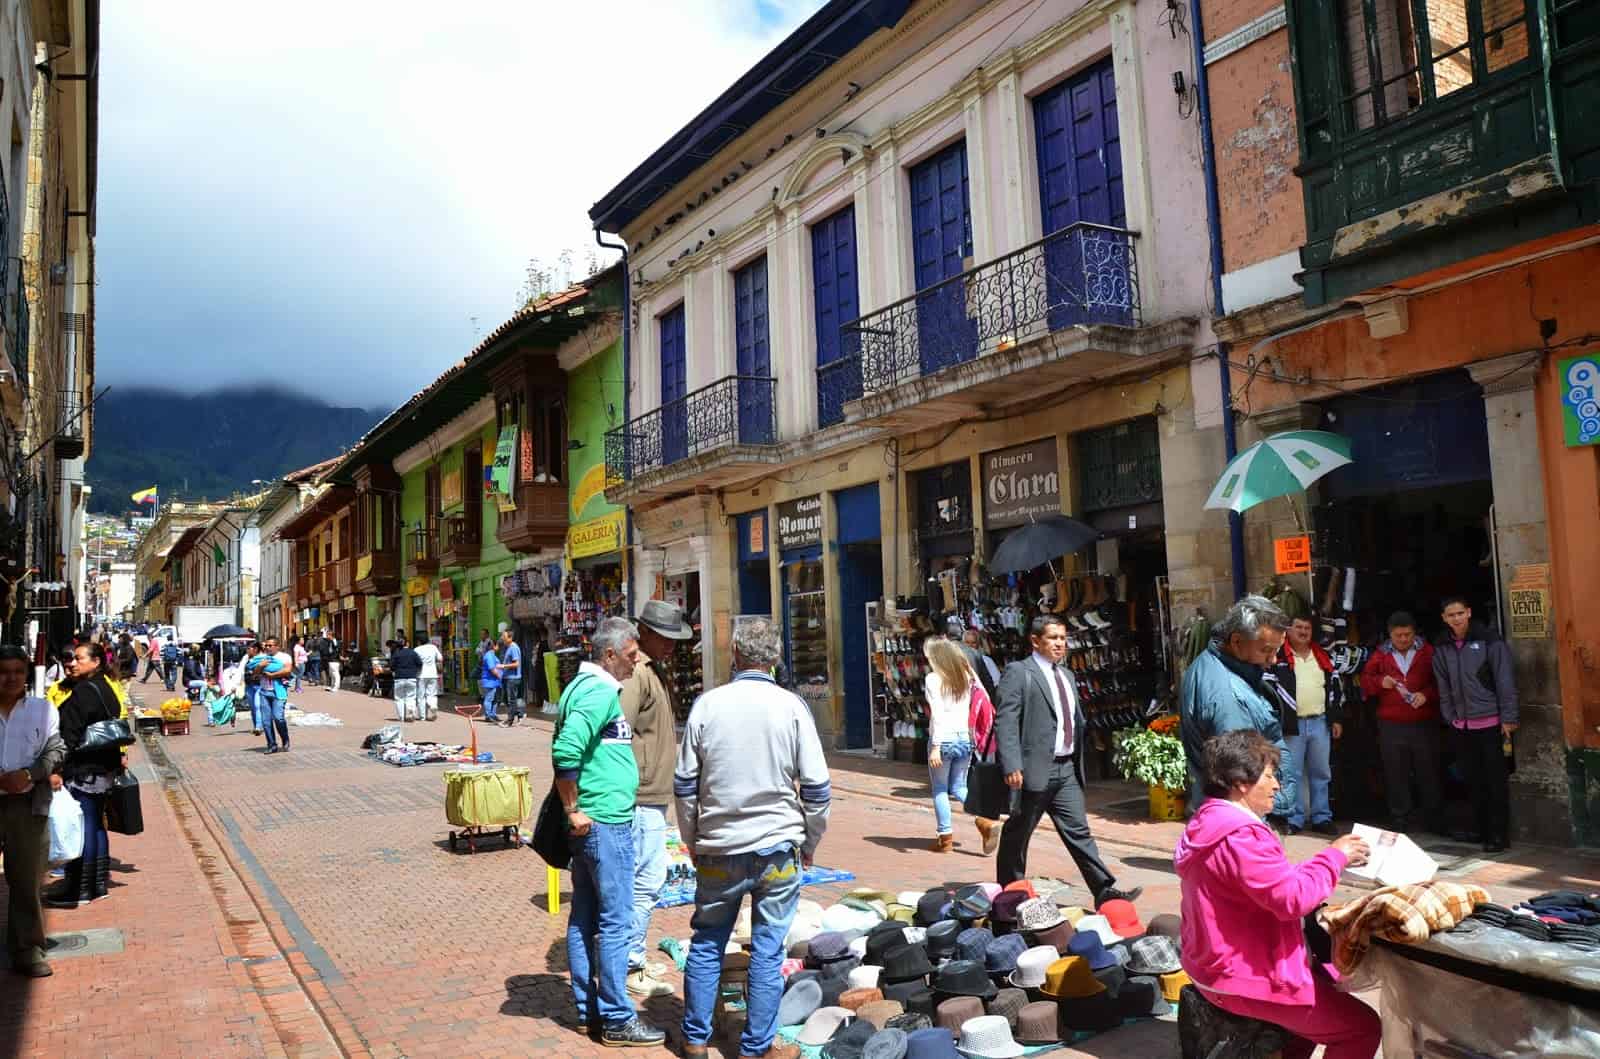 Calle 10 between Carrera 10 and Carrera 9 in La Candelaria, Bogotá, Colombia